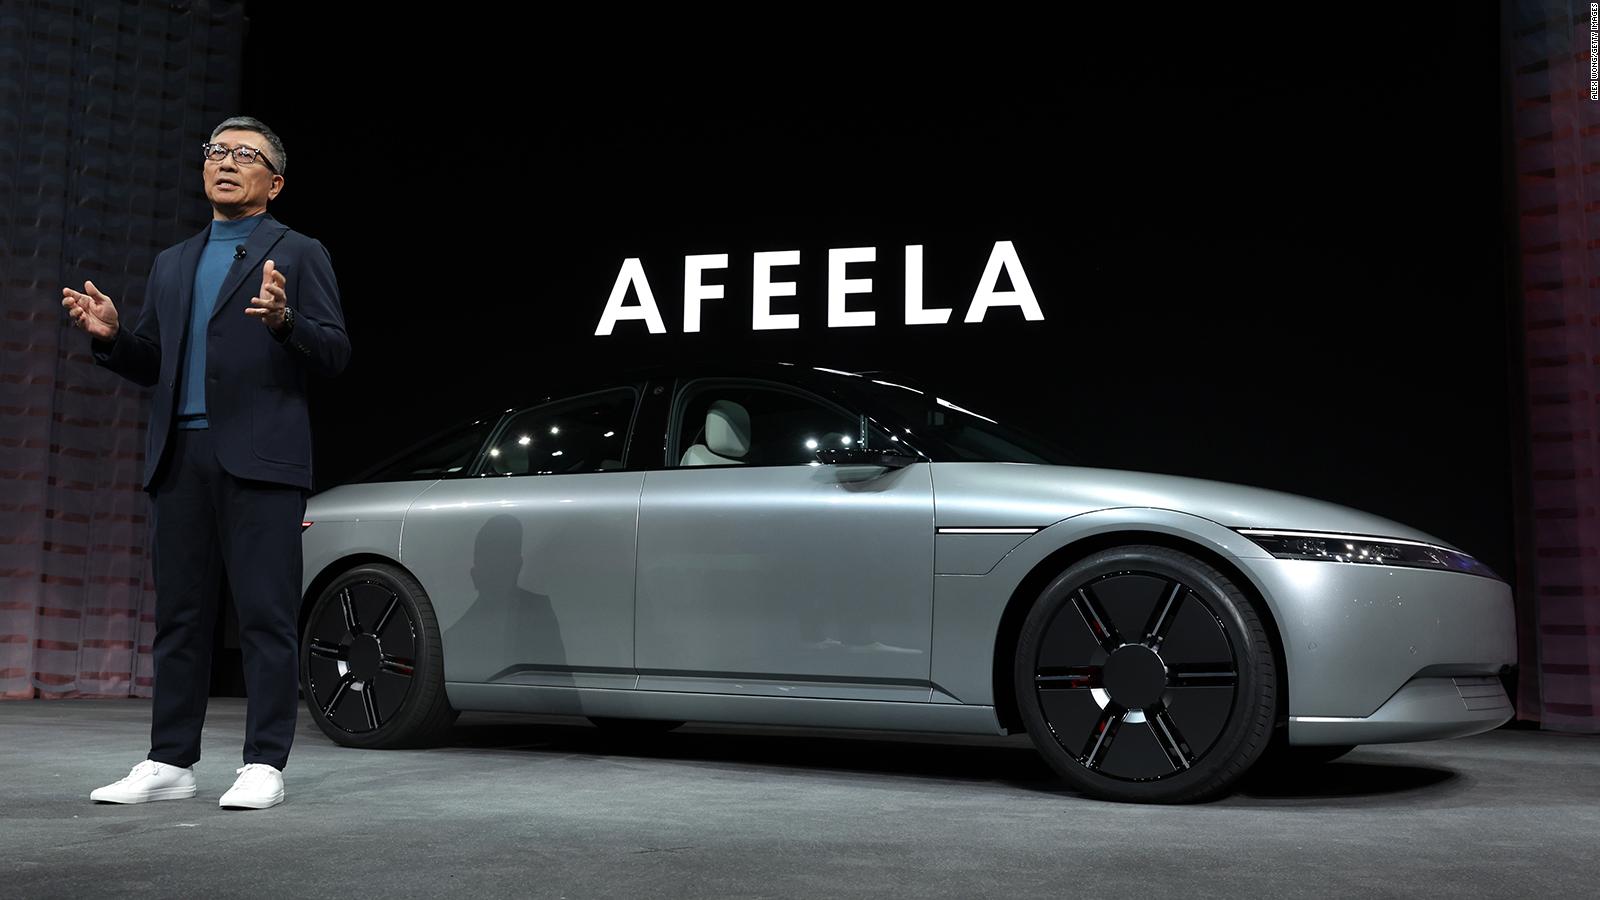 Sony y Honda presentan Afeela, su nueva marca de coches eléctricos |  Video